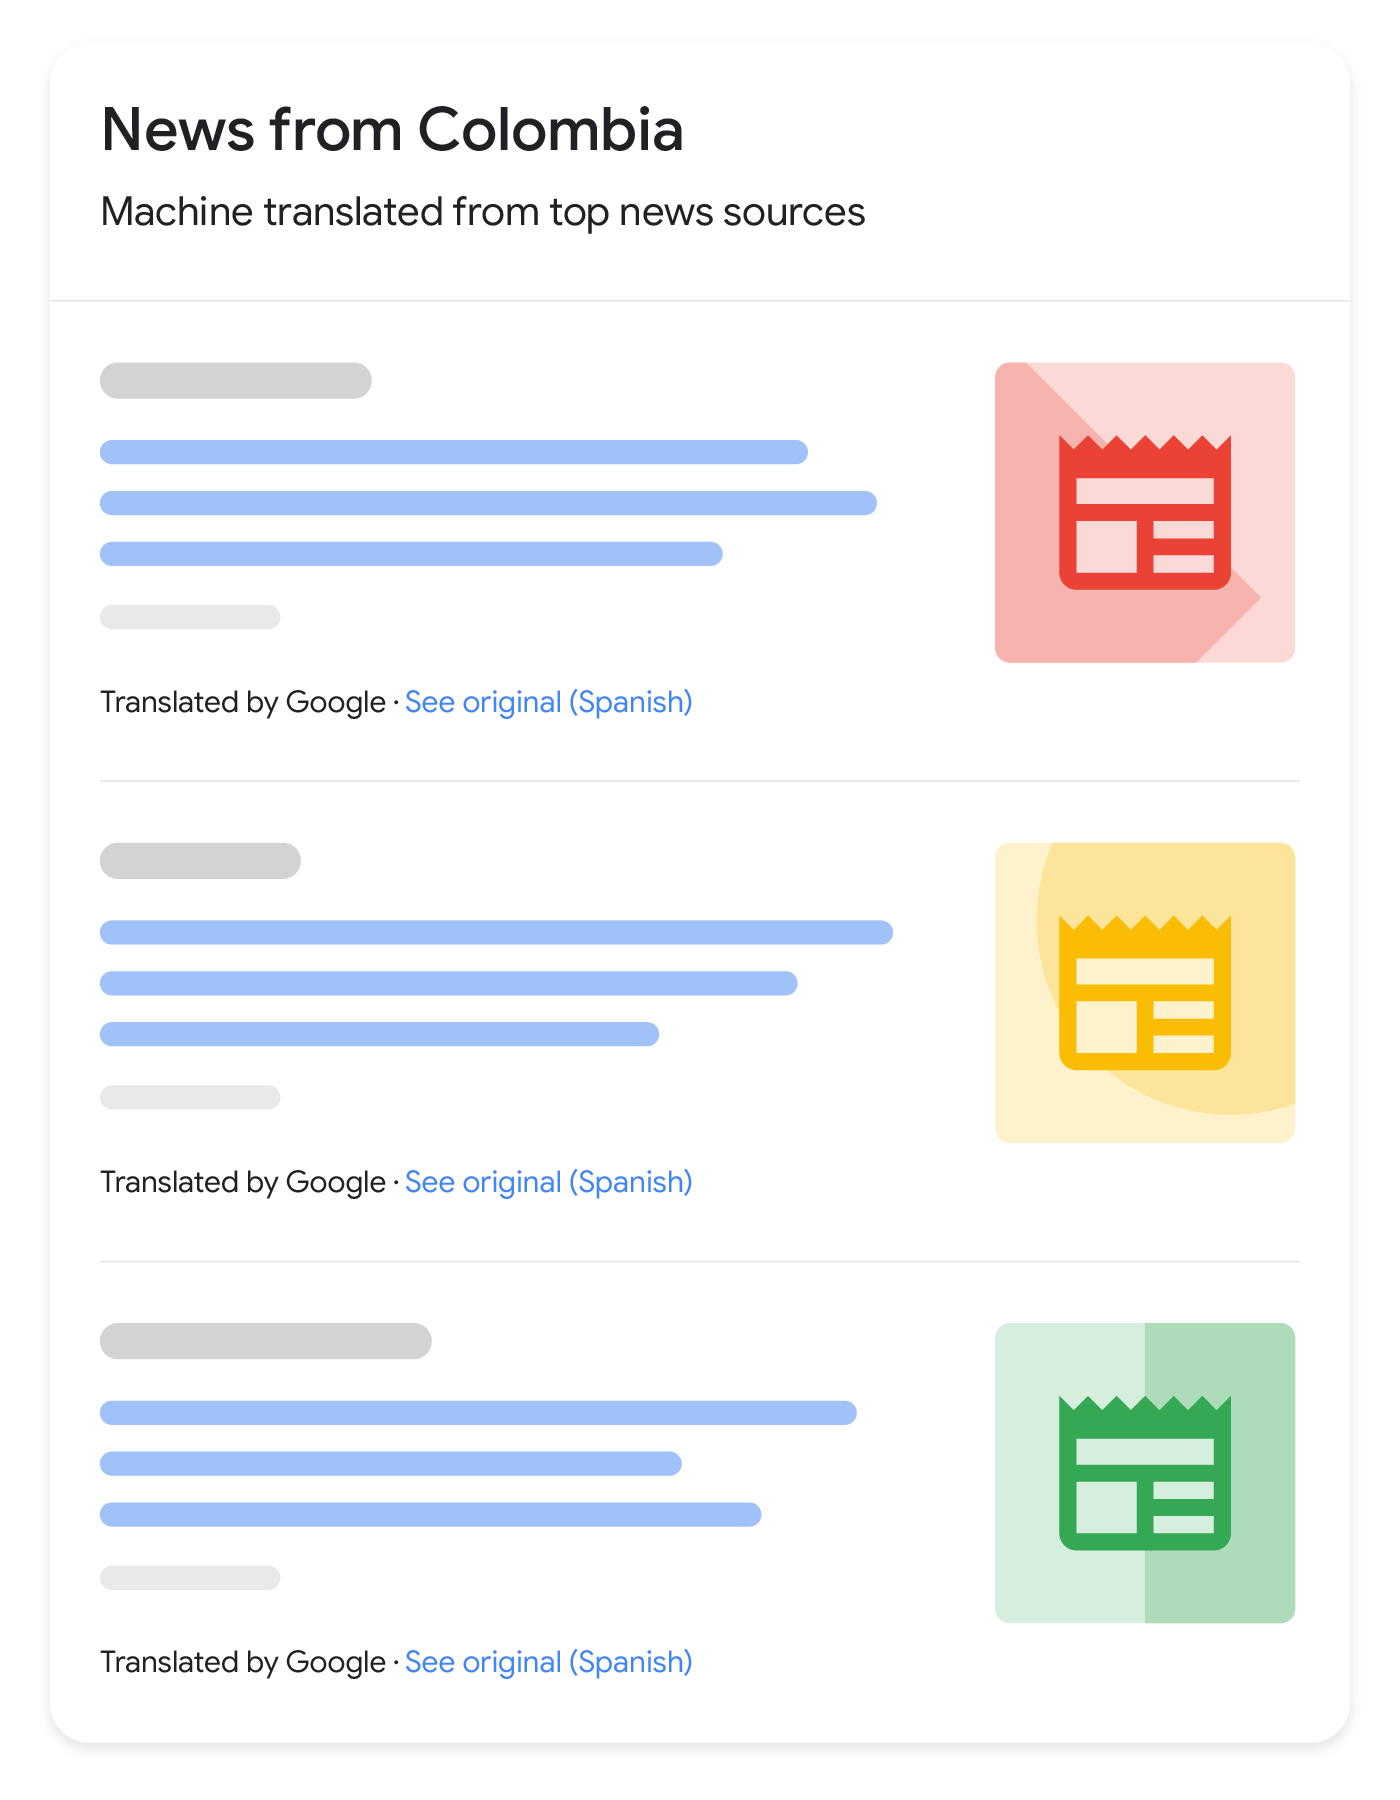 ผลการค้นหาข่าวที่แปลมีลักษณะอย่างไรใน Google Search